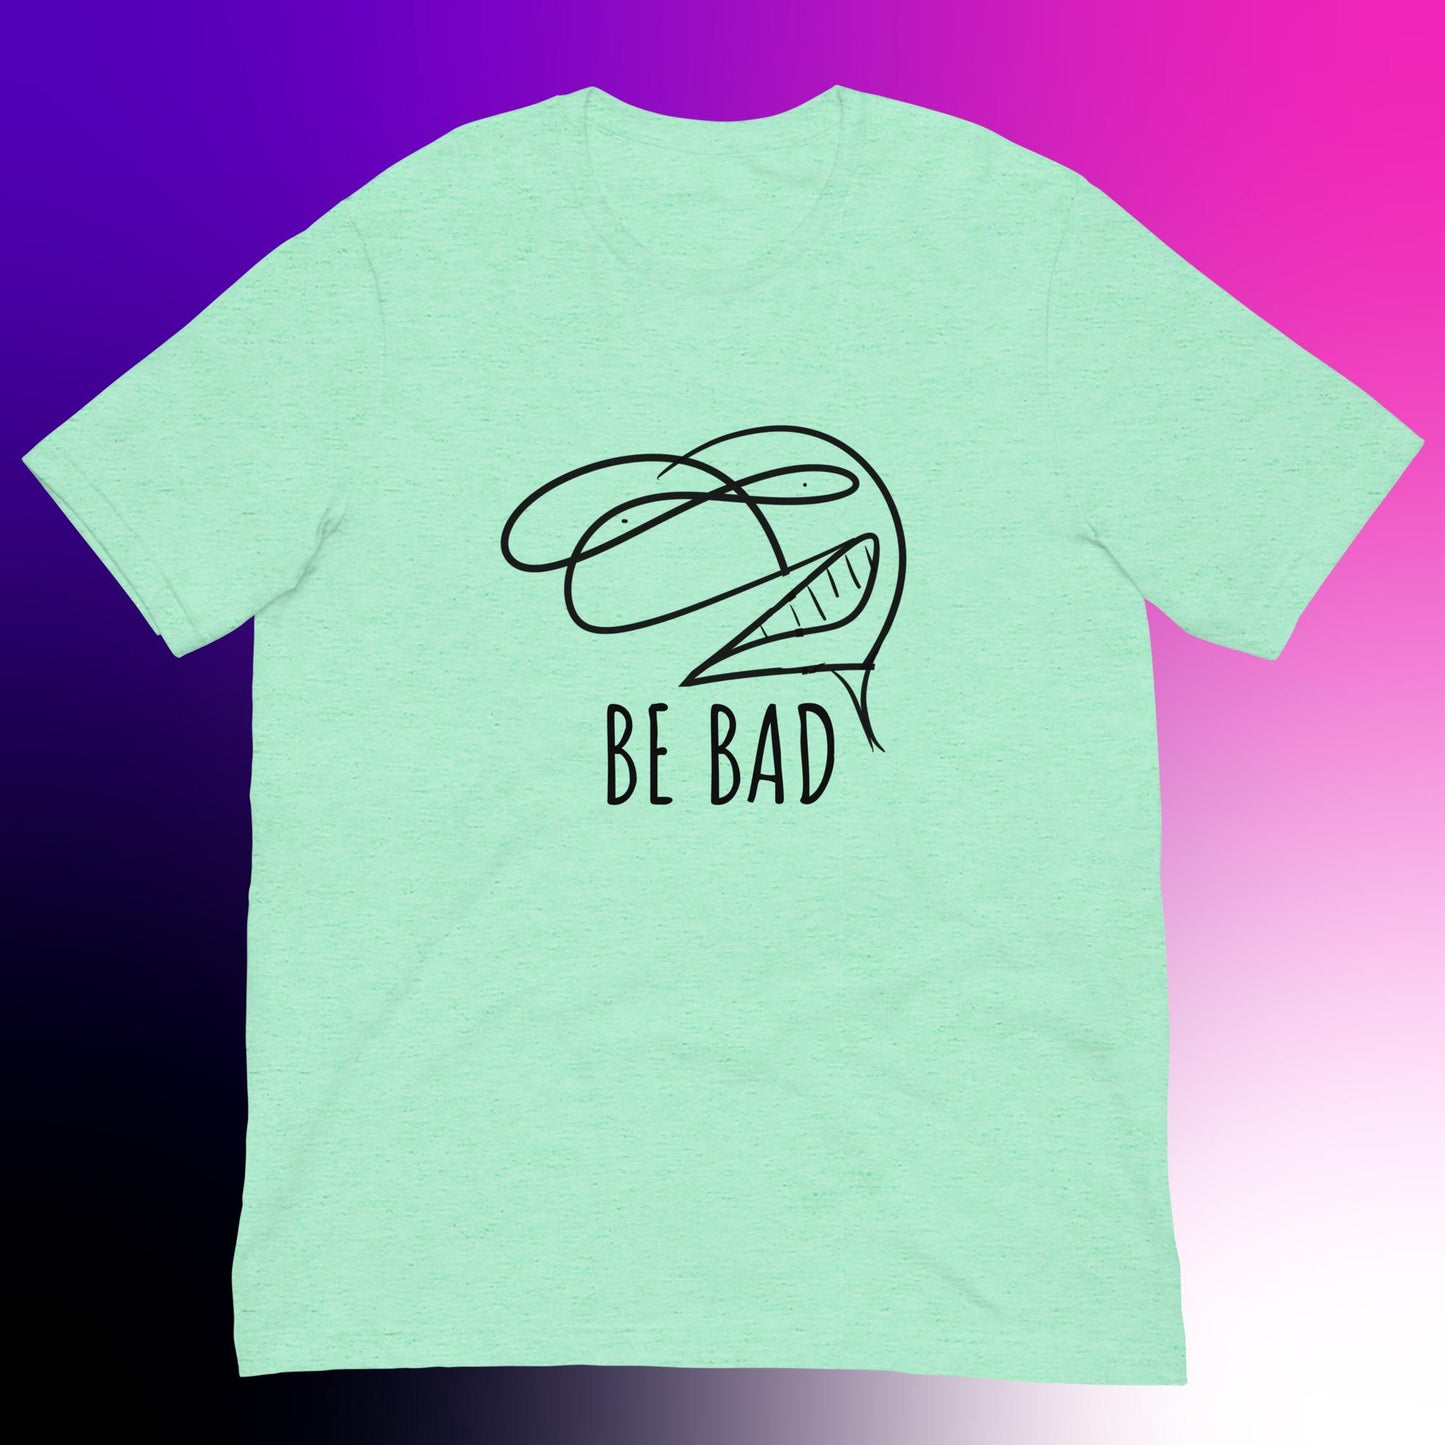 BE BAD - Unisex t-shirt